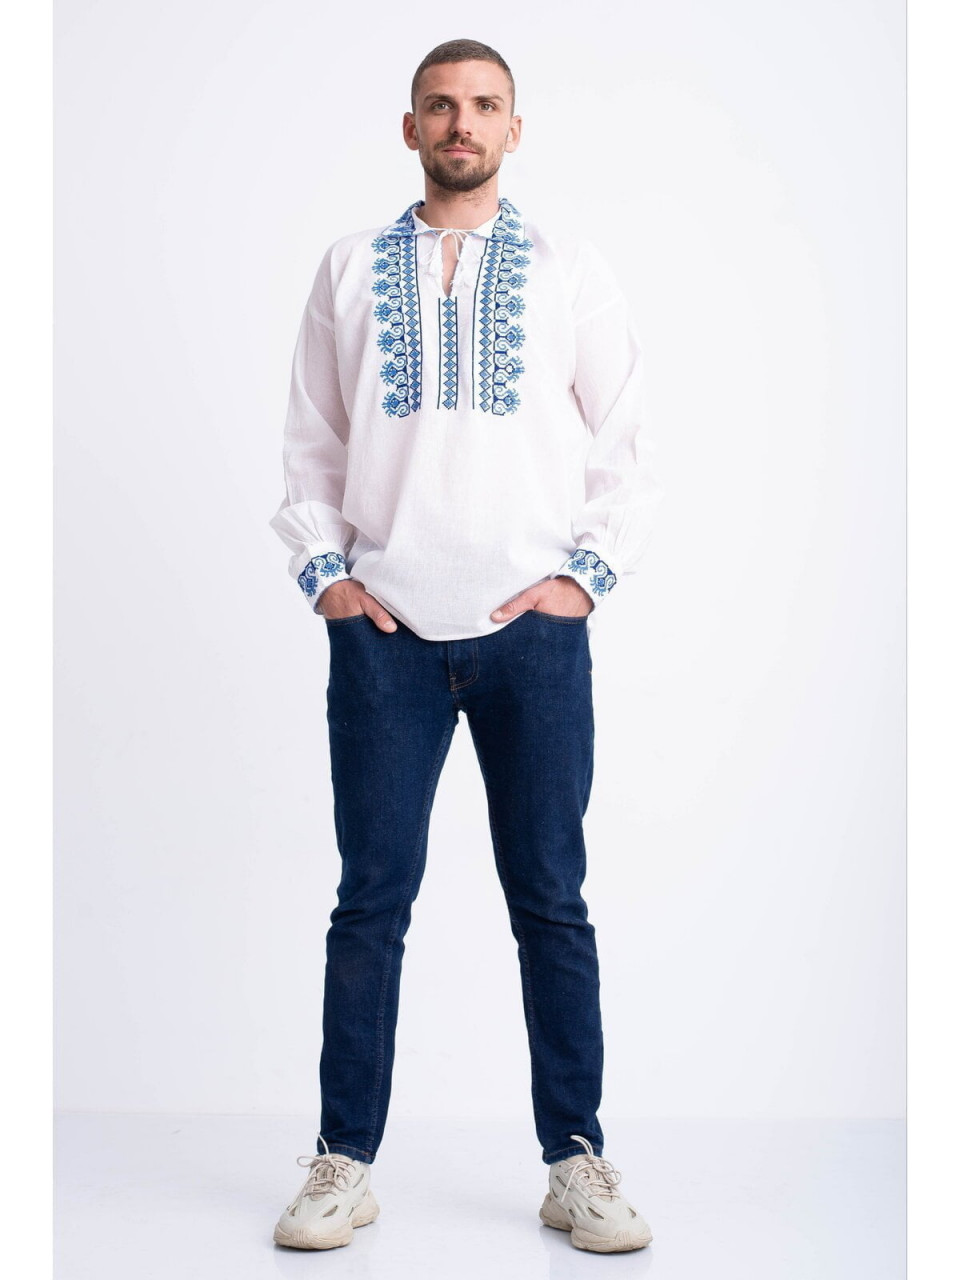 Bluza traditionala din bumbac alb cu broderie albastra in forma de romb, pentru barbat